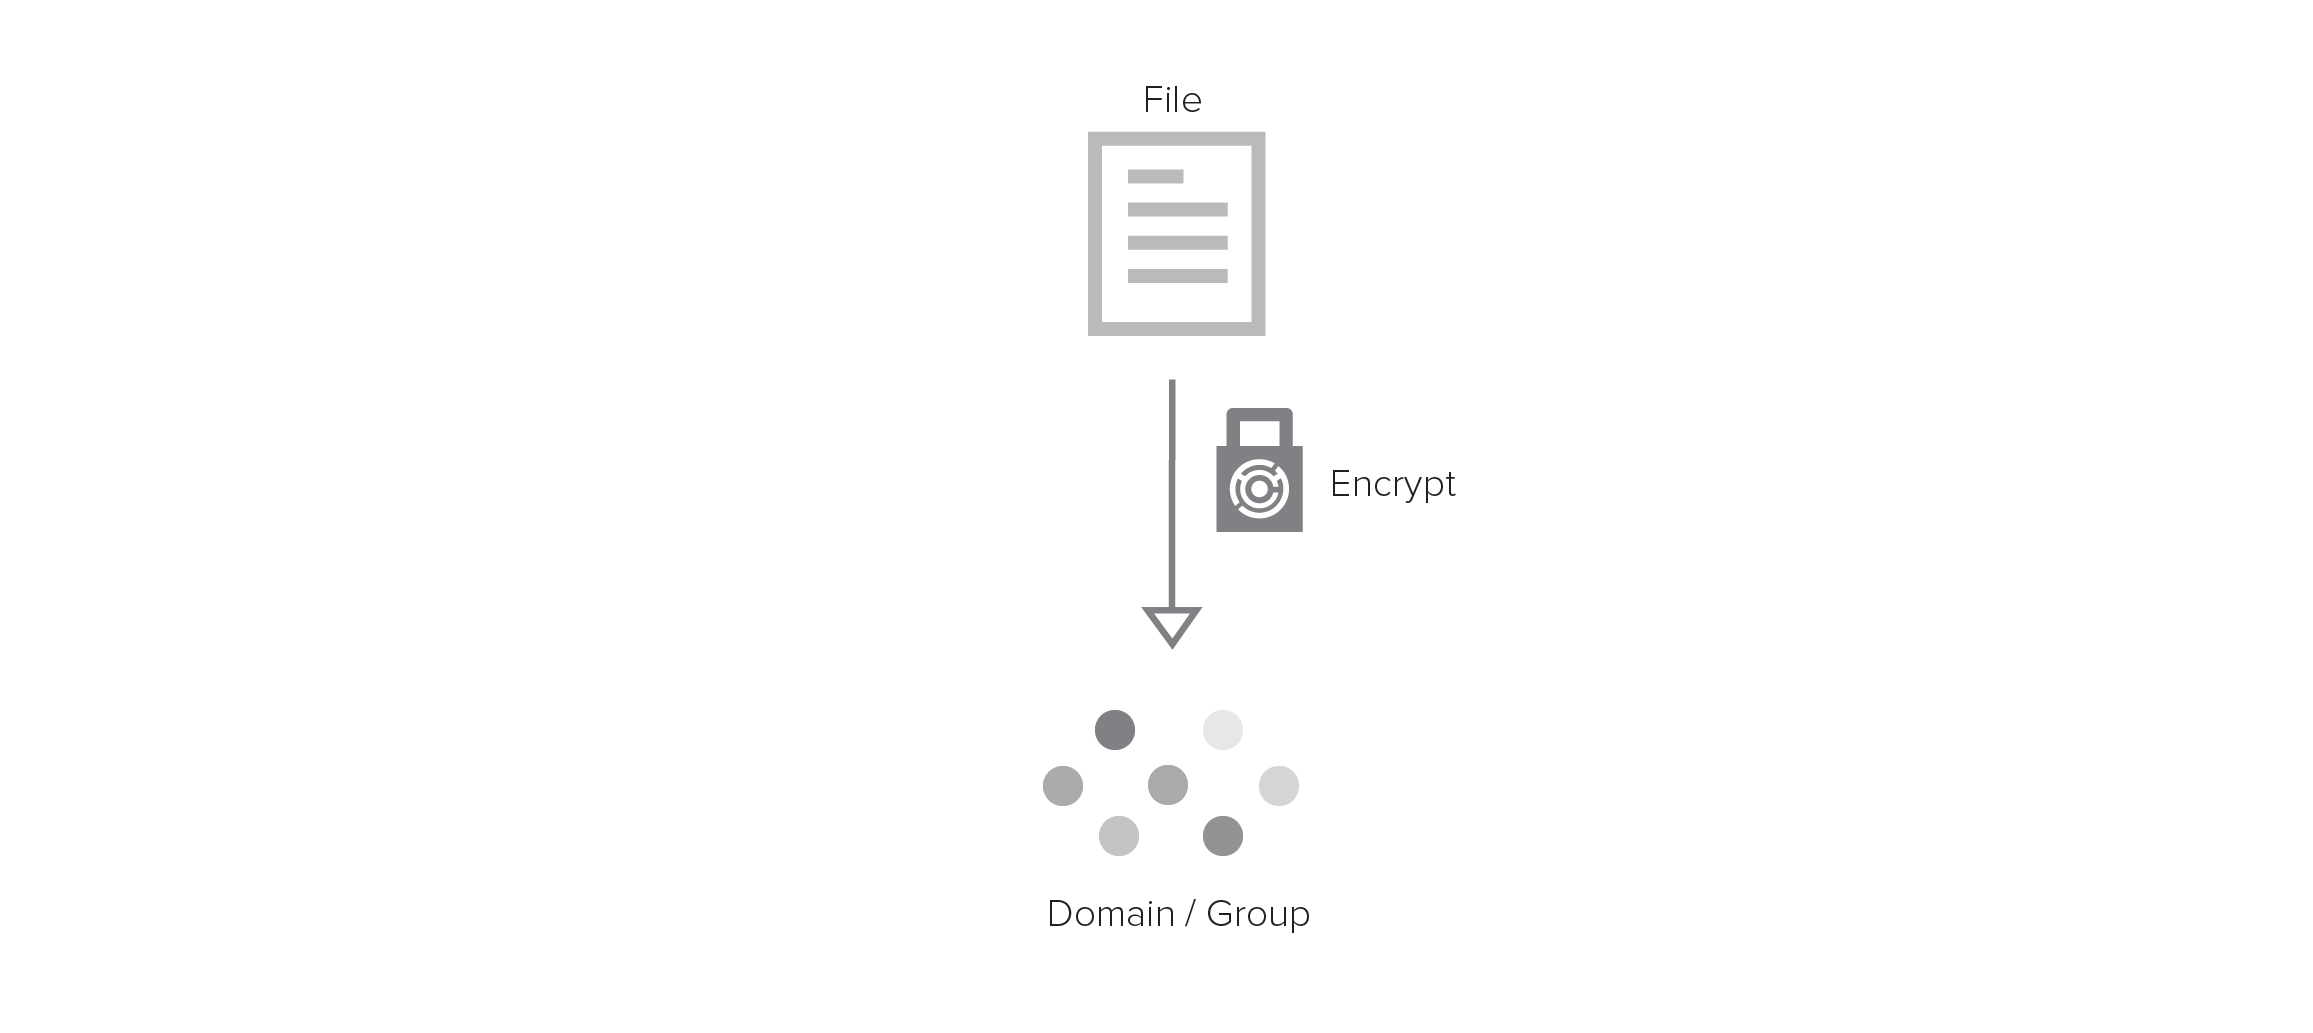 Image showing file encrypting to group